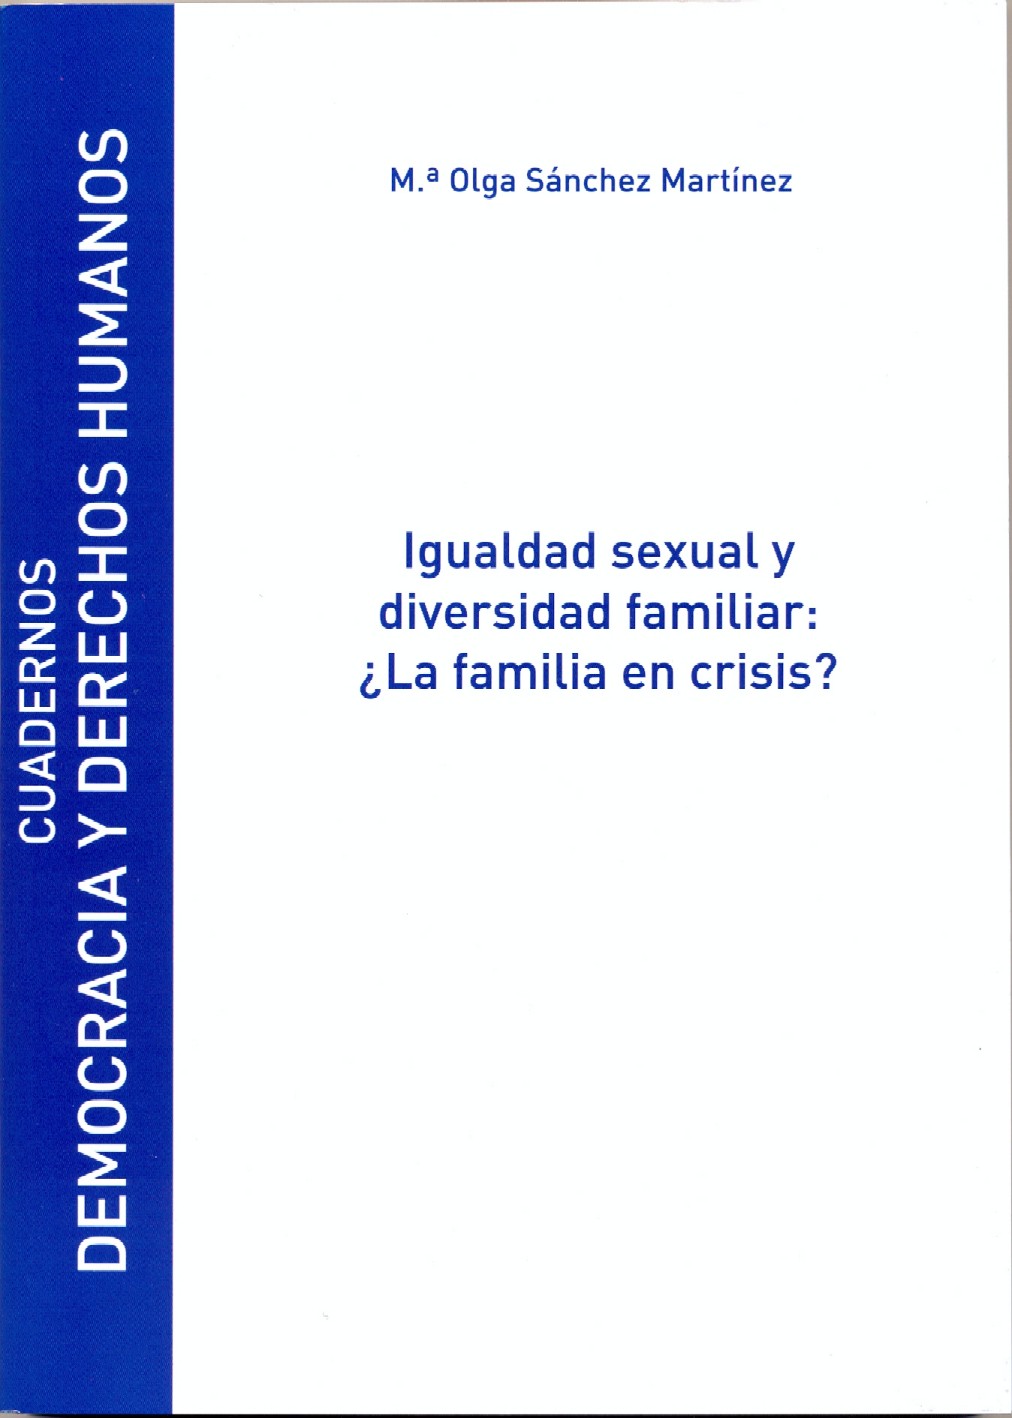 Igualdad sexual y diversidad familiar: ¿La familia en crisis?